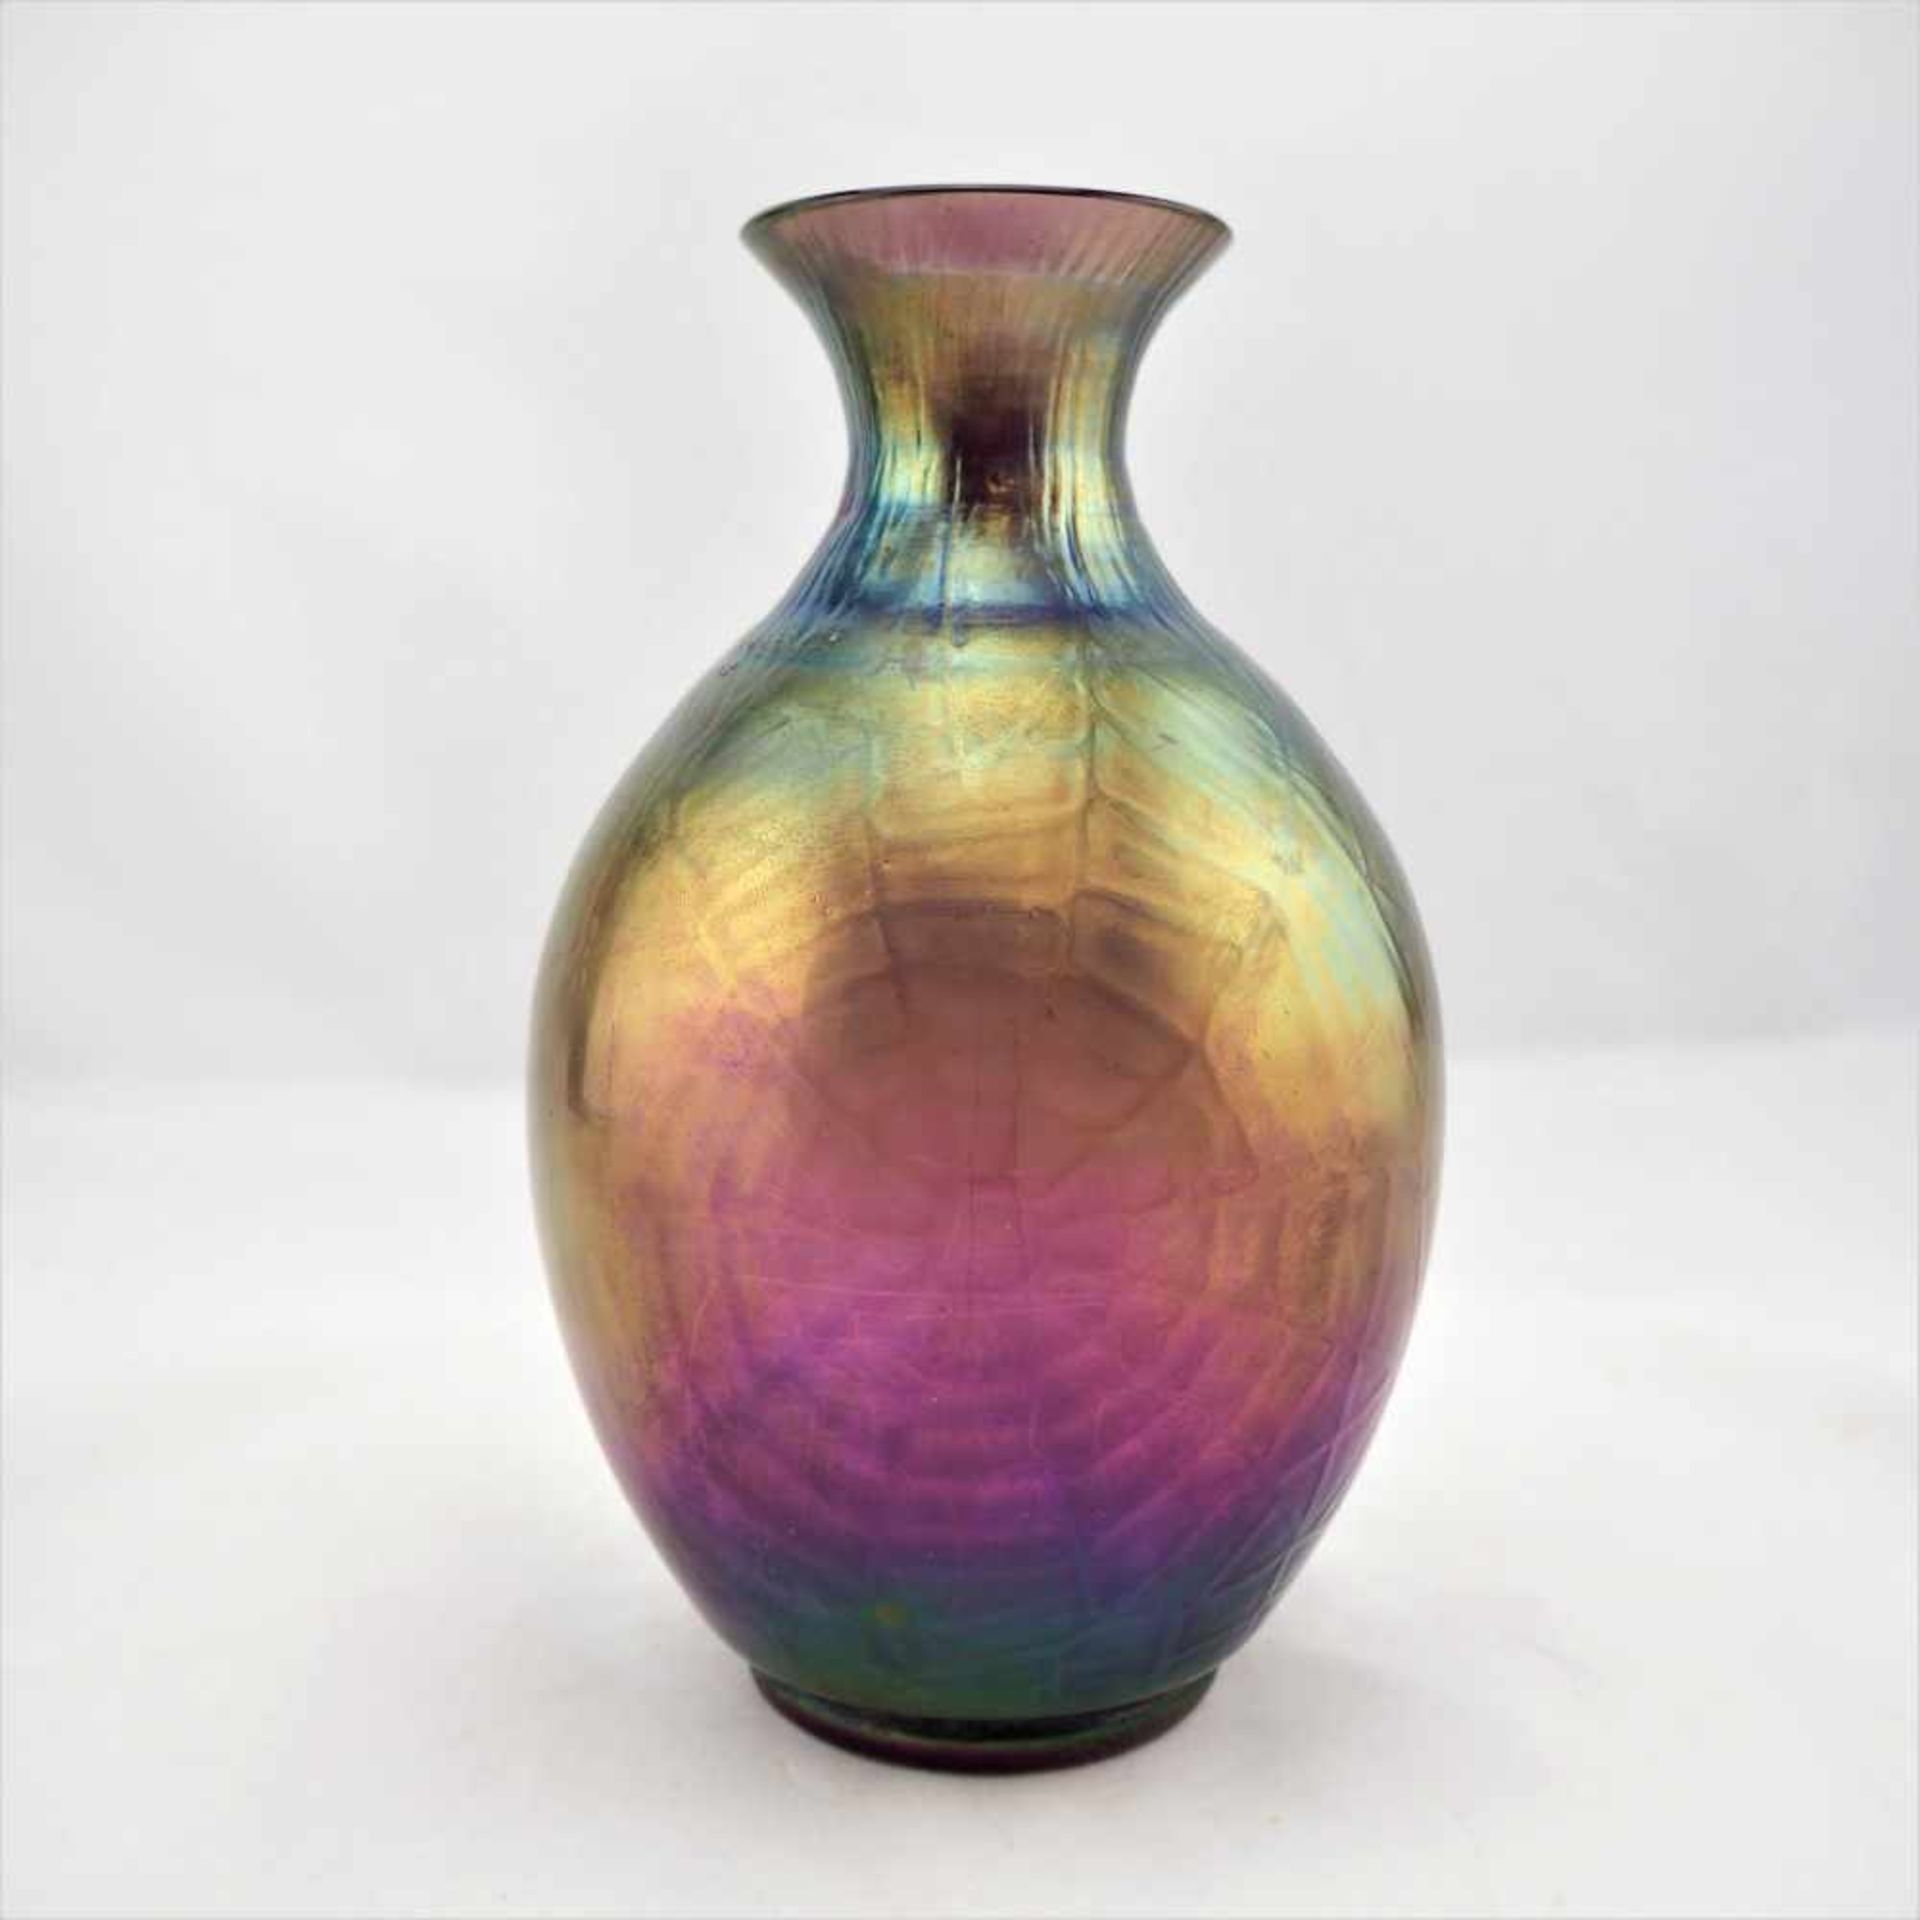 Vase Jugendstil, um 1920Glas Vase in Birnenform gefertigt, mit stark irisierender Oberfläche.